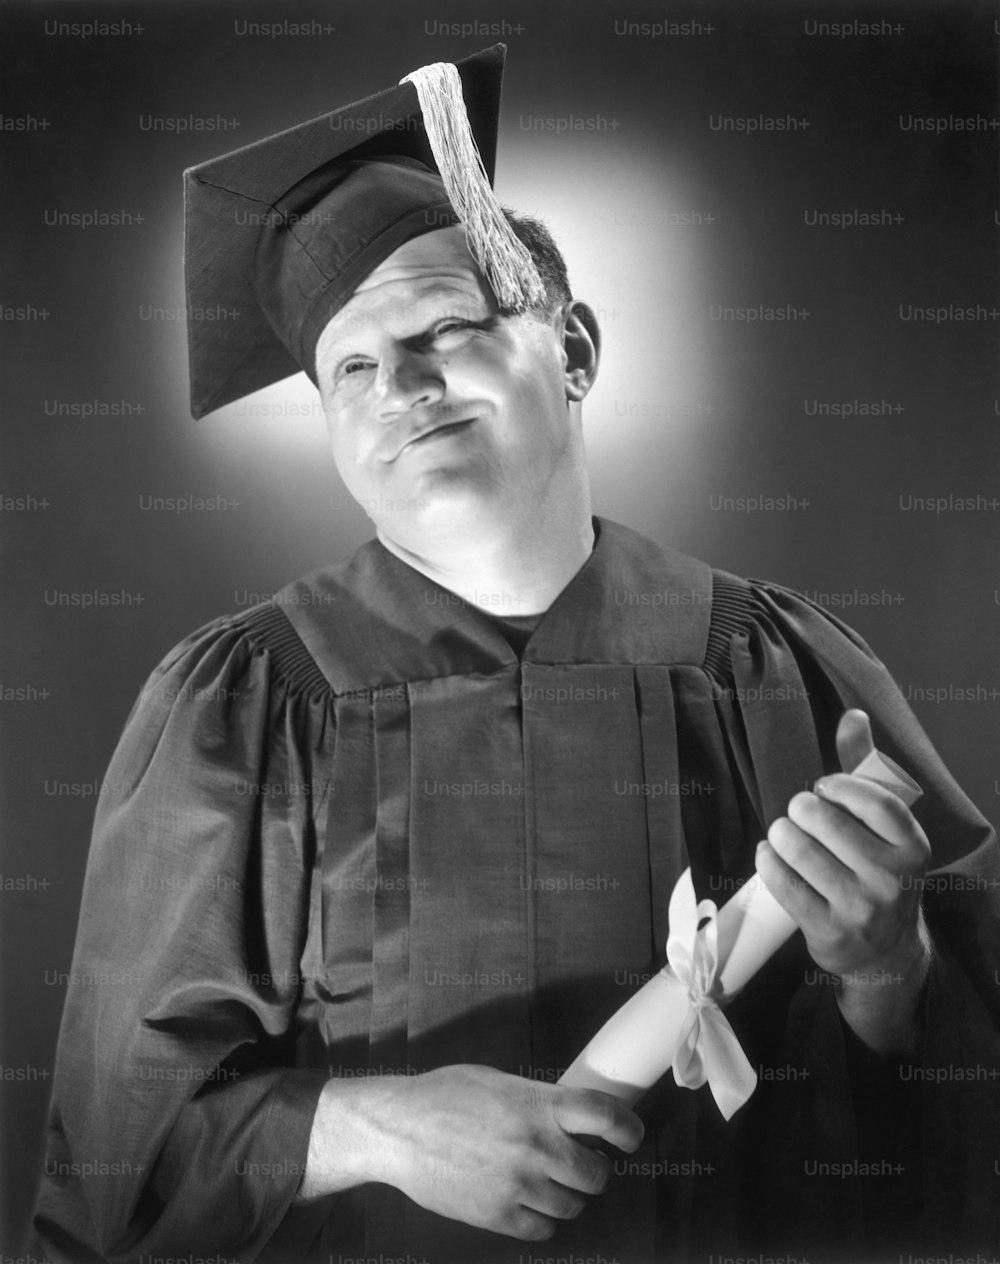 アメリカ合衆国 - 1950年代頃:キャップ&ガウン、卒業証書付きの幸せな男の肖像画。